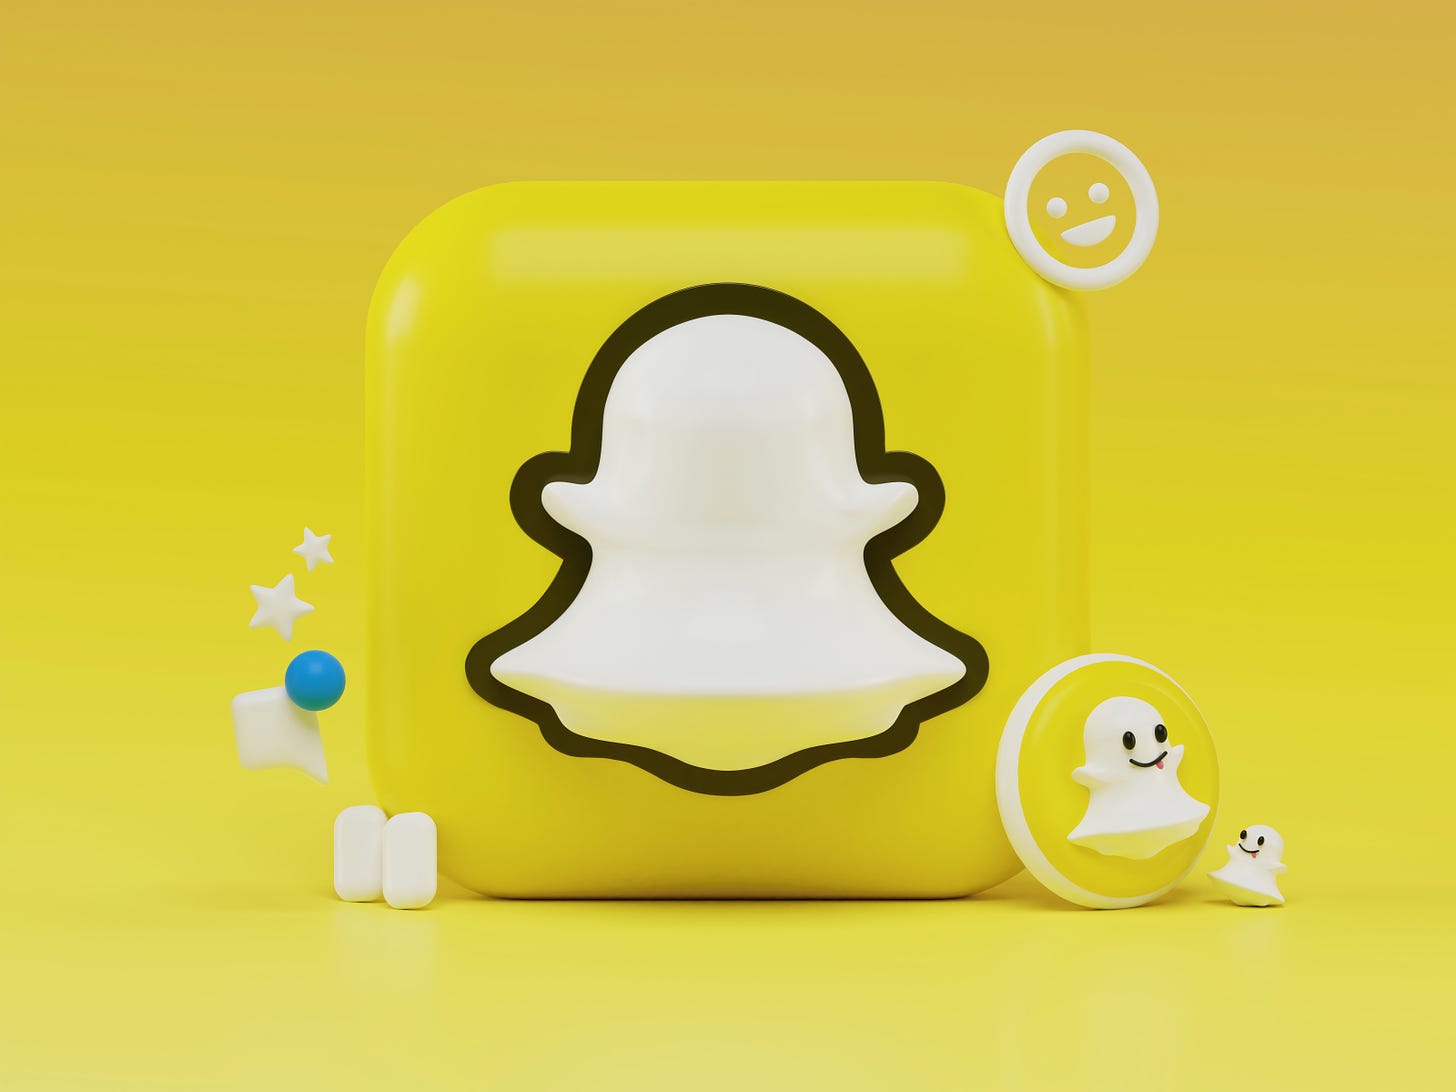 menacing  Search Snapchat Creators, Filters and Lenses